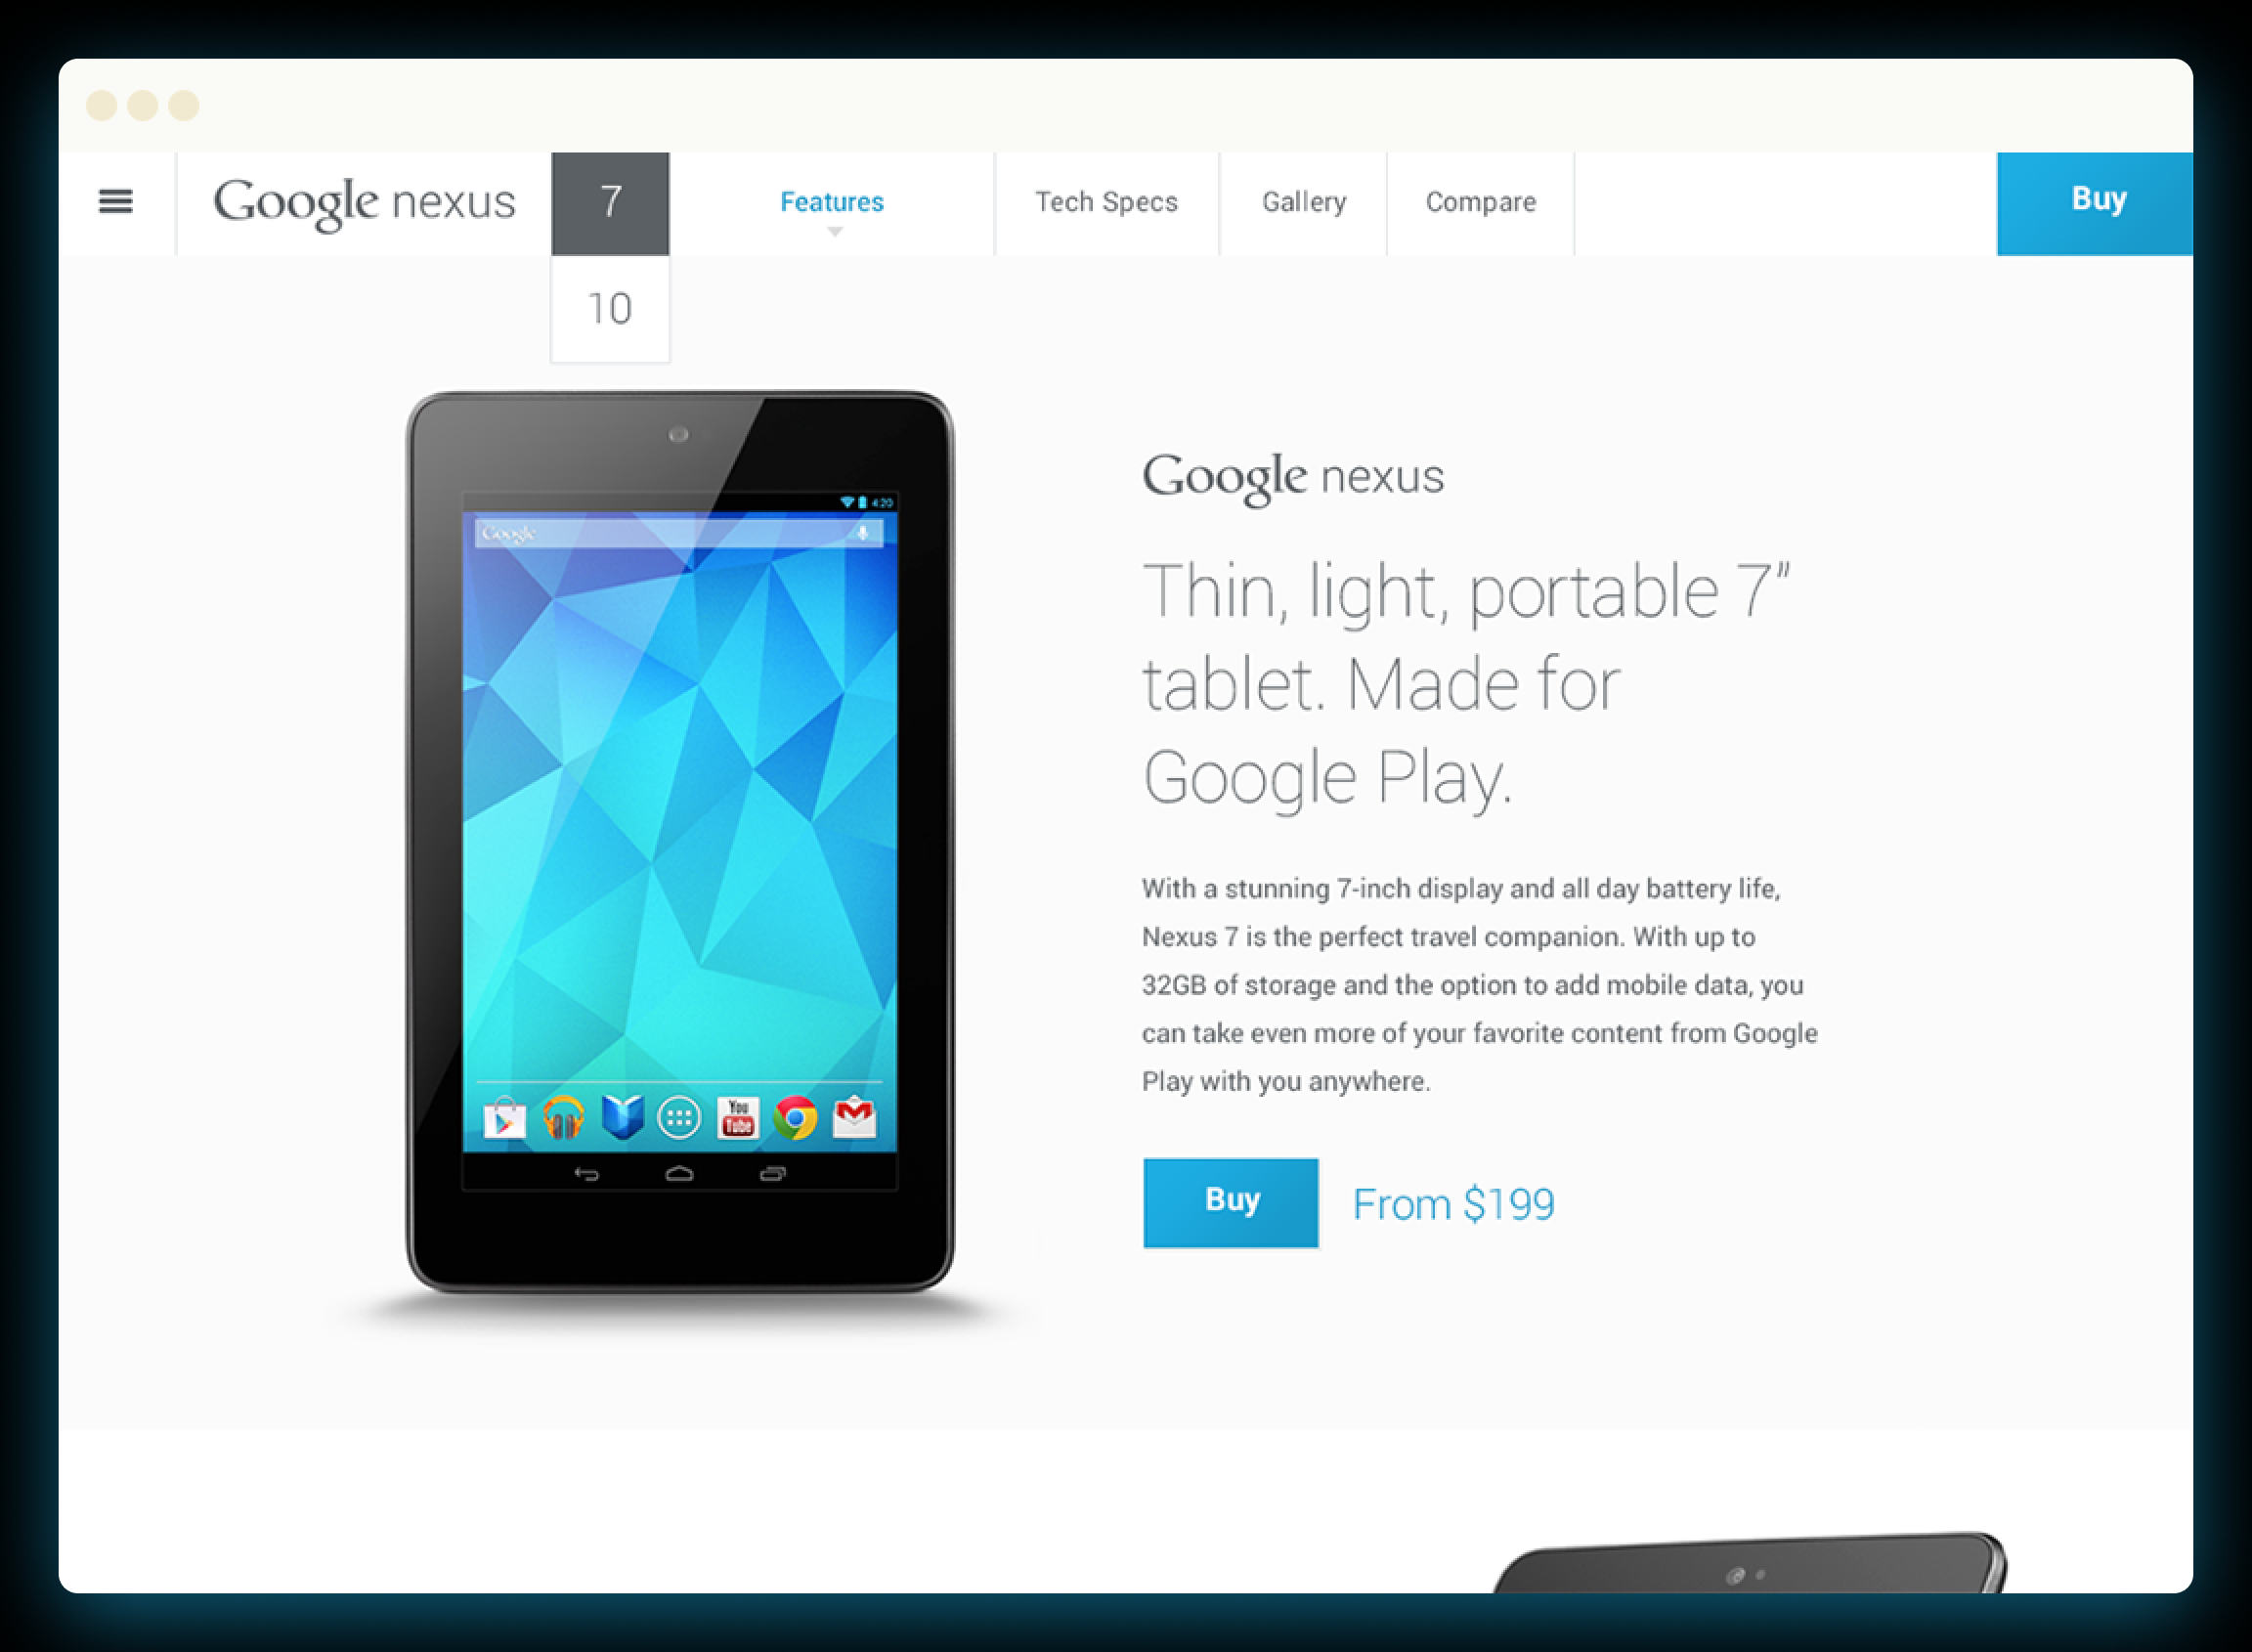 Google Nexus website.